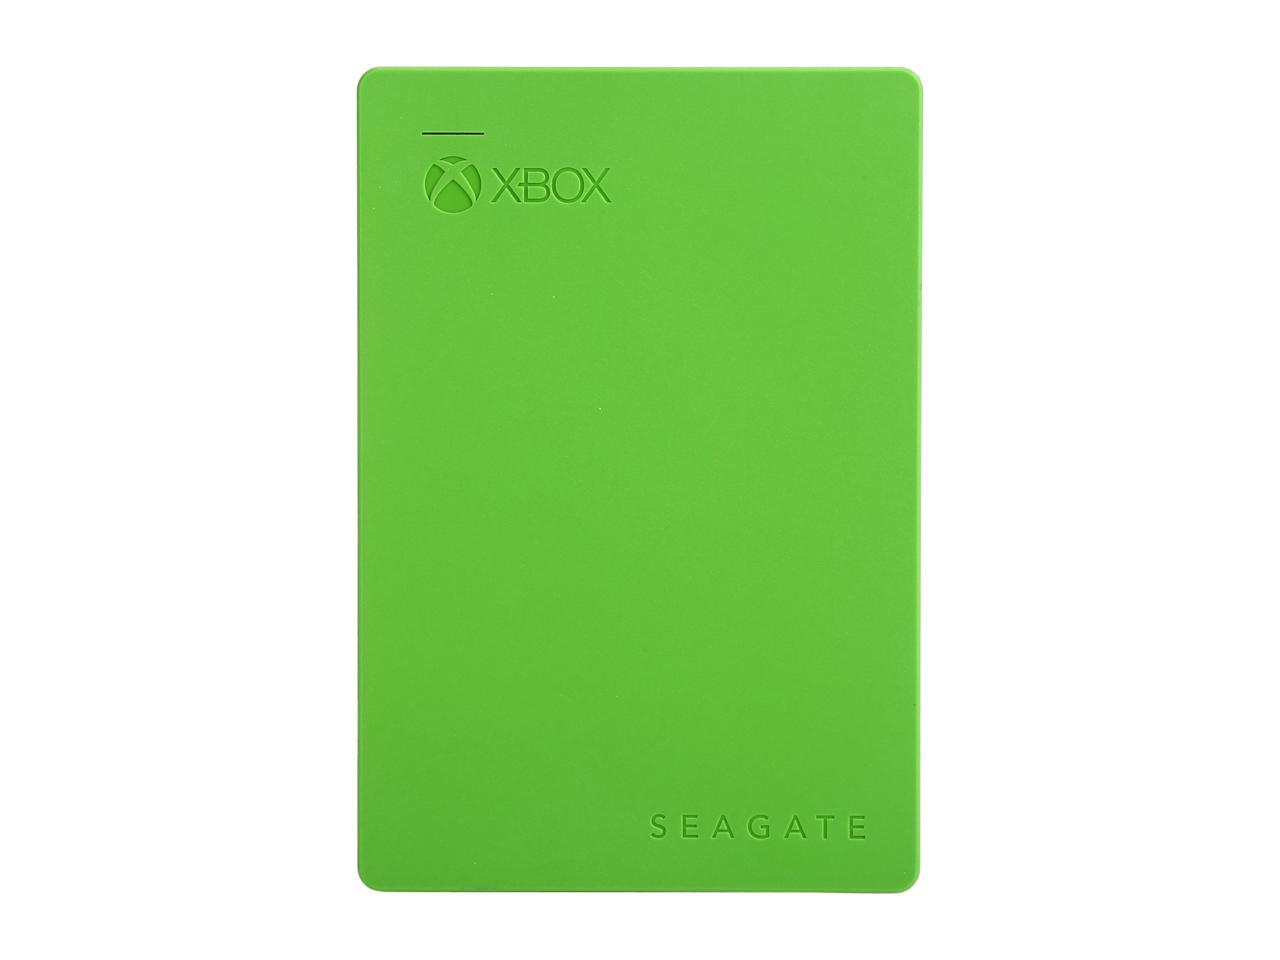 Seagate 2TB Game Drive for Xbox Portable Drive USB 3.0 Model STEA2000403 Green